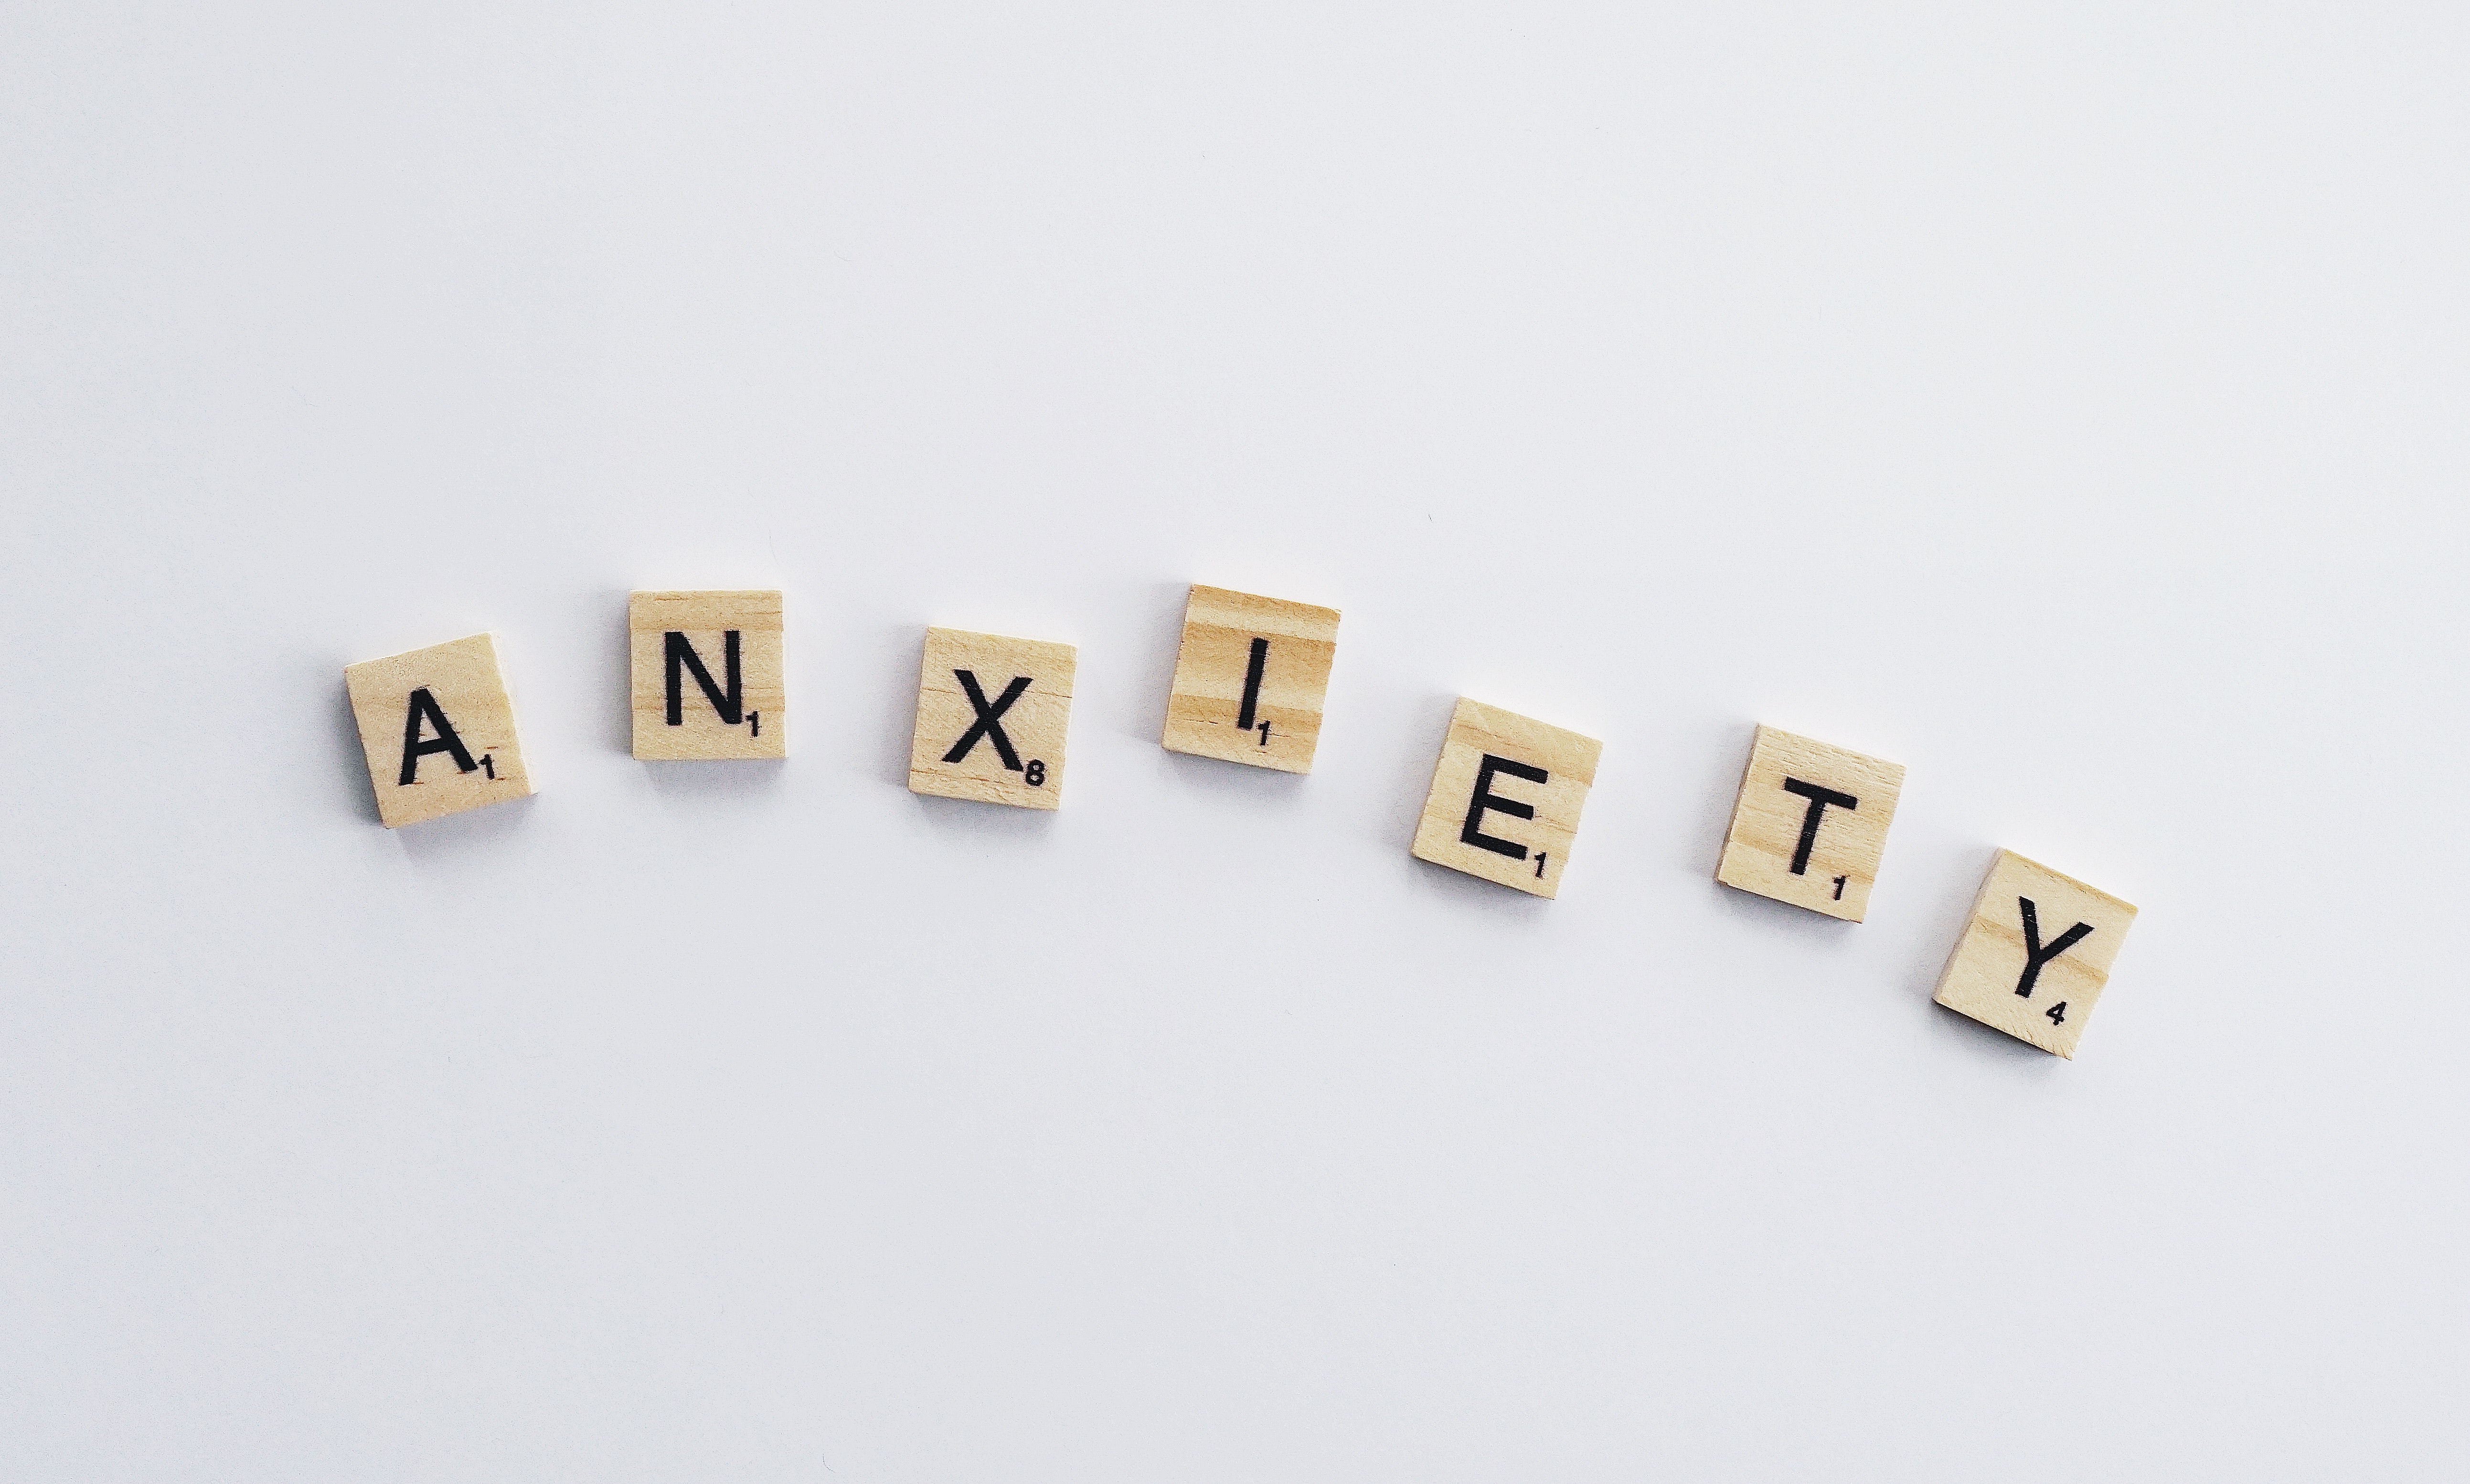 La ansiedad se expresa en mosaicos de letras.